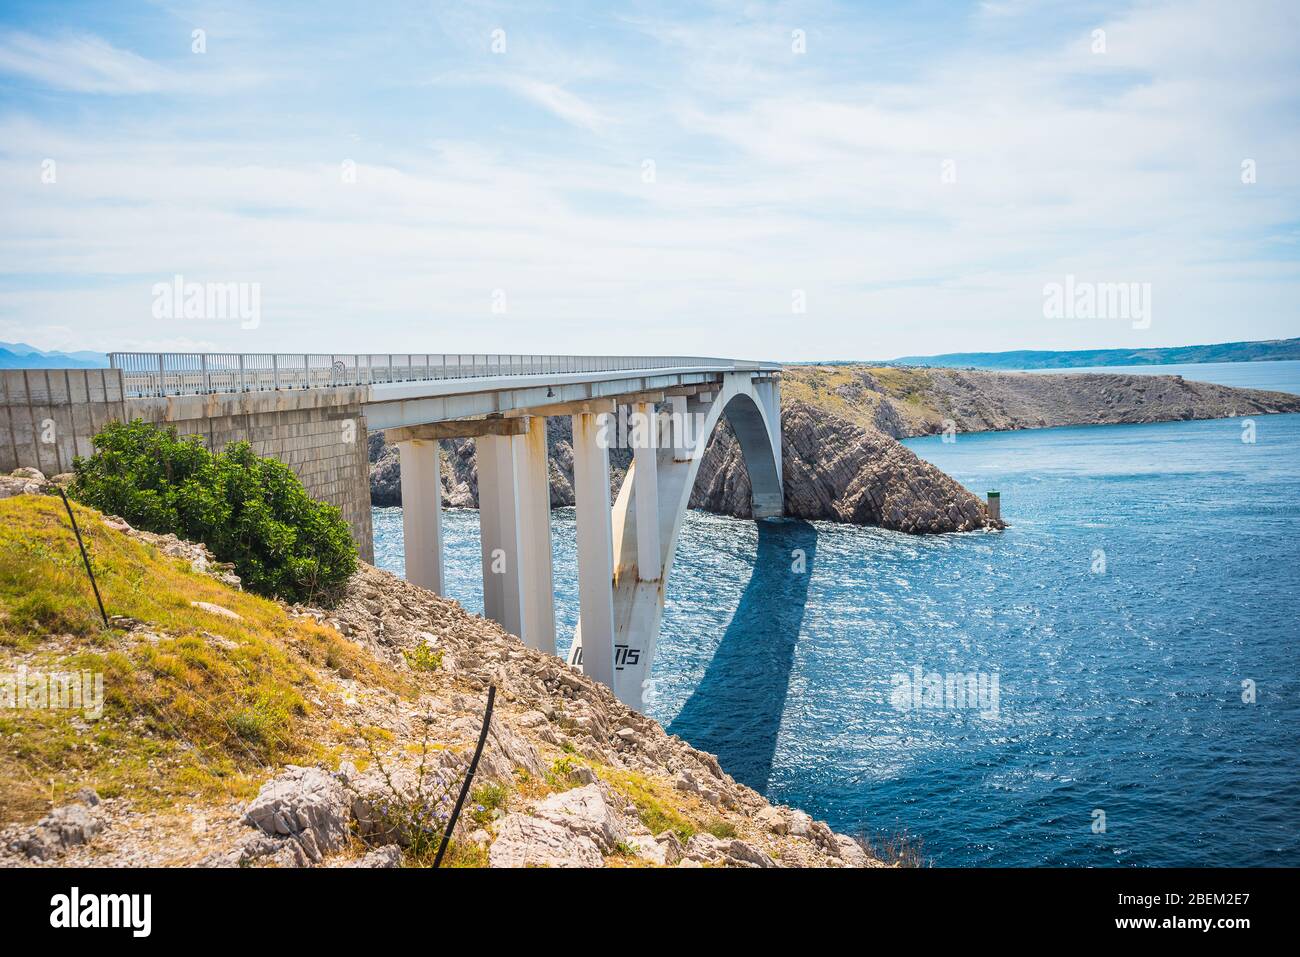 Pont de Pag - pont de Paski qui relie l'île de Pag au continent croate au-dessus d'un détroit de la mer Adriatique appelé Ljubacka vrata Banque D'Images